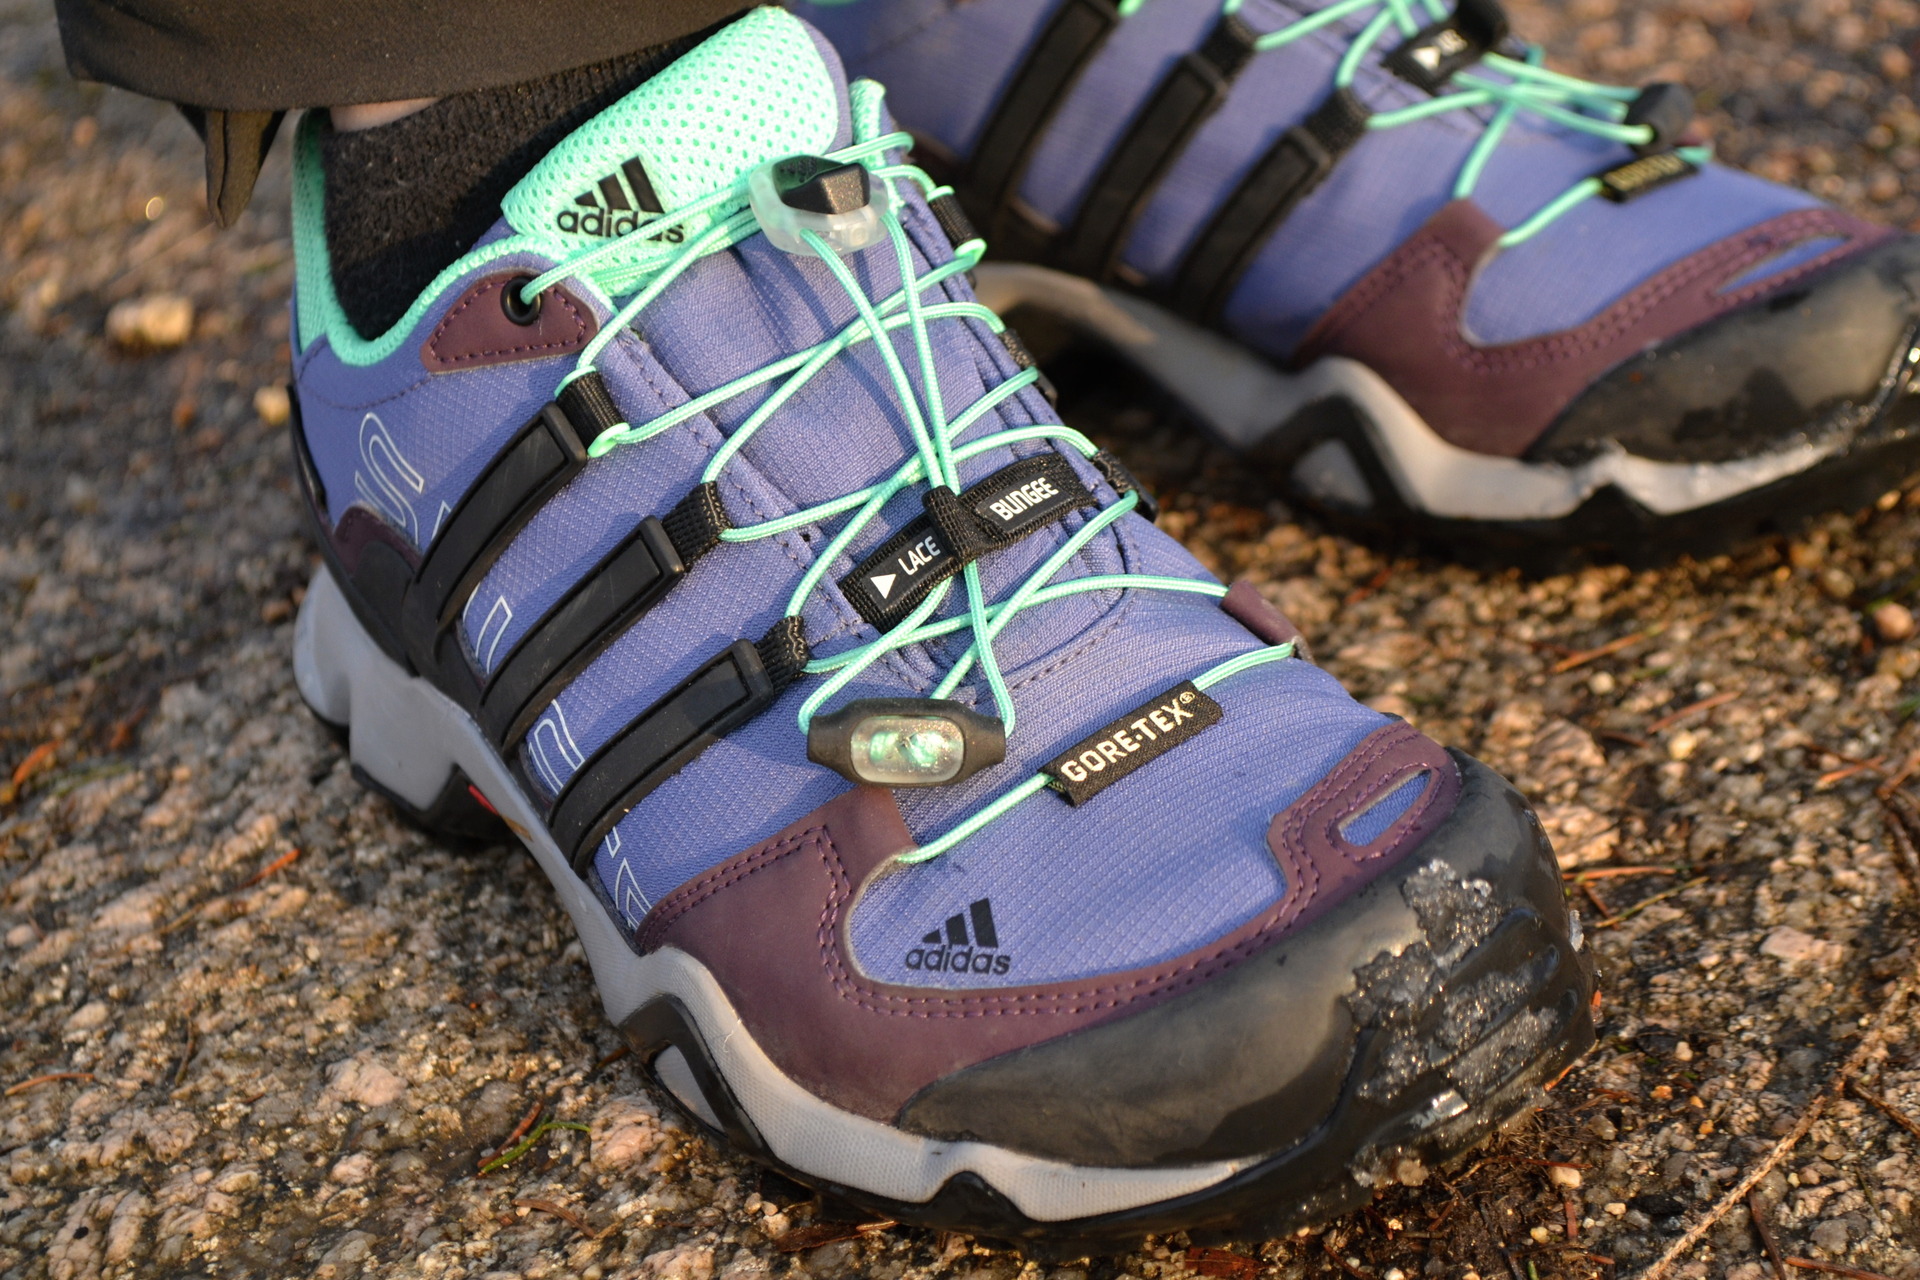 Díky podešvi Traxion bota dobře drží na mokrém i suchém povrchu.